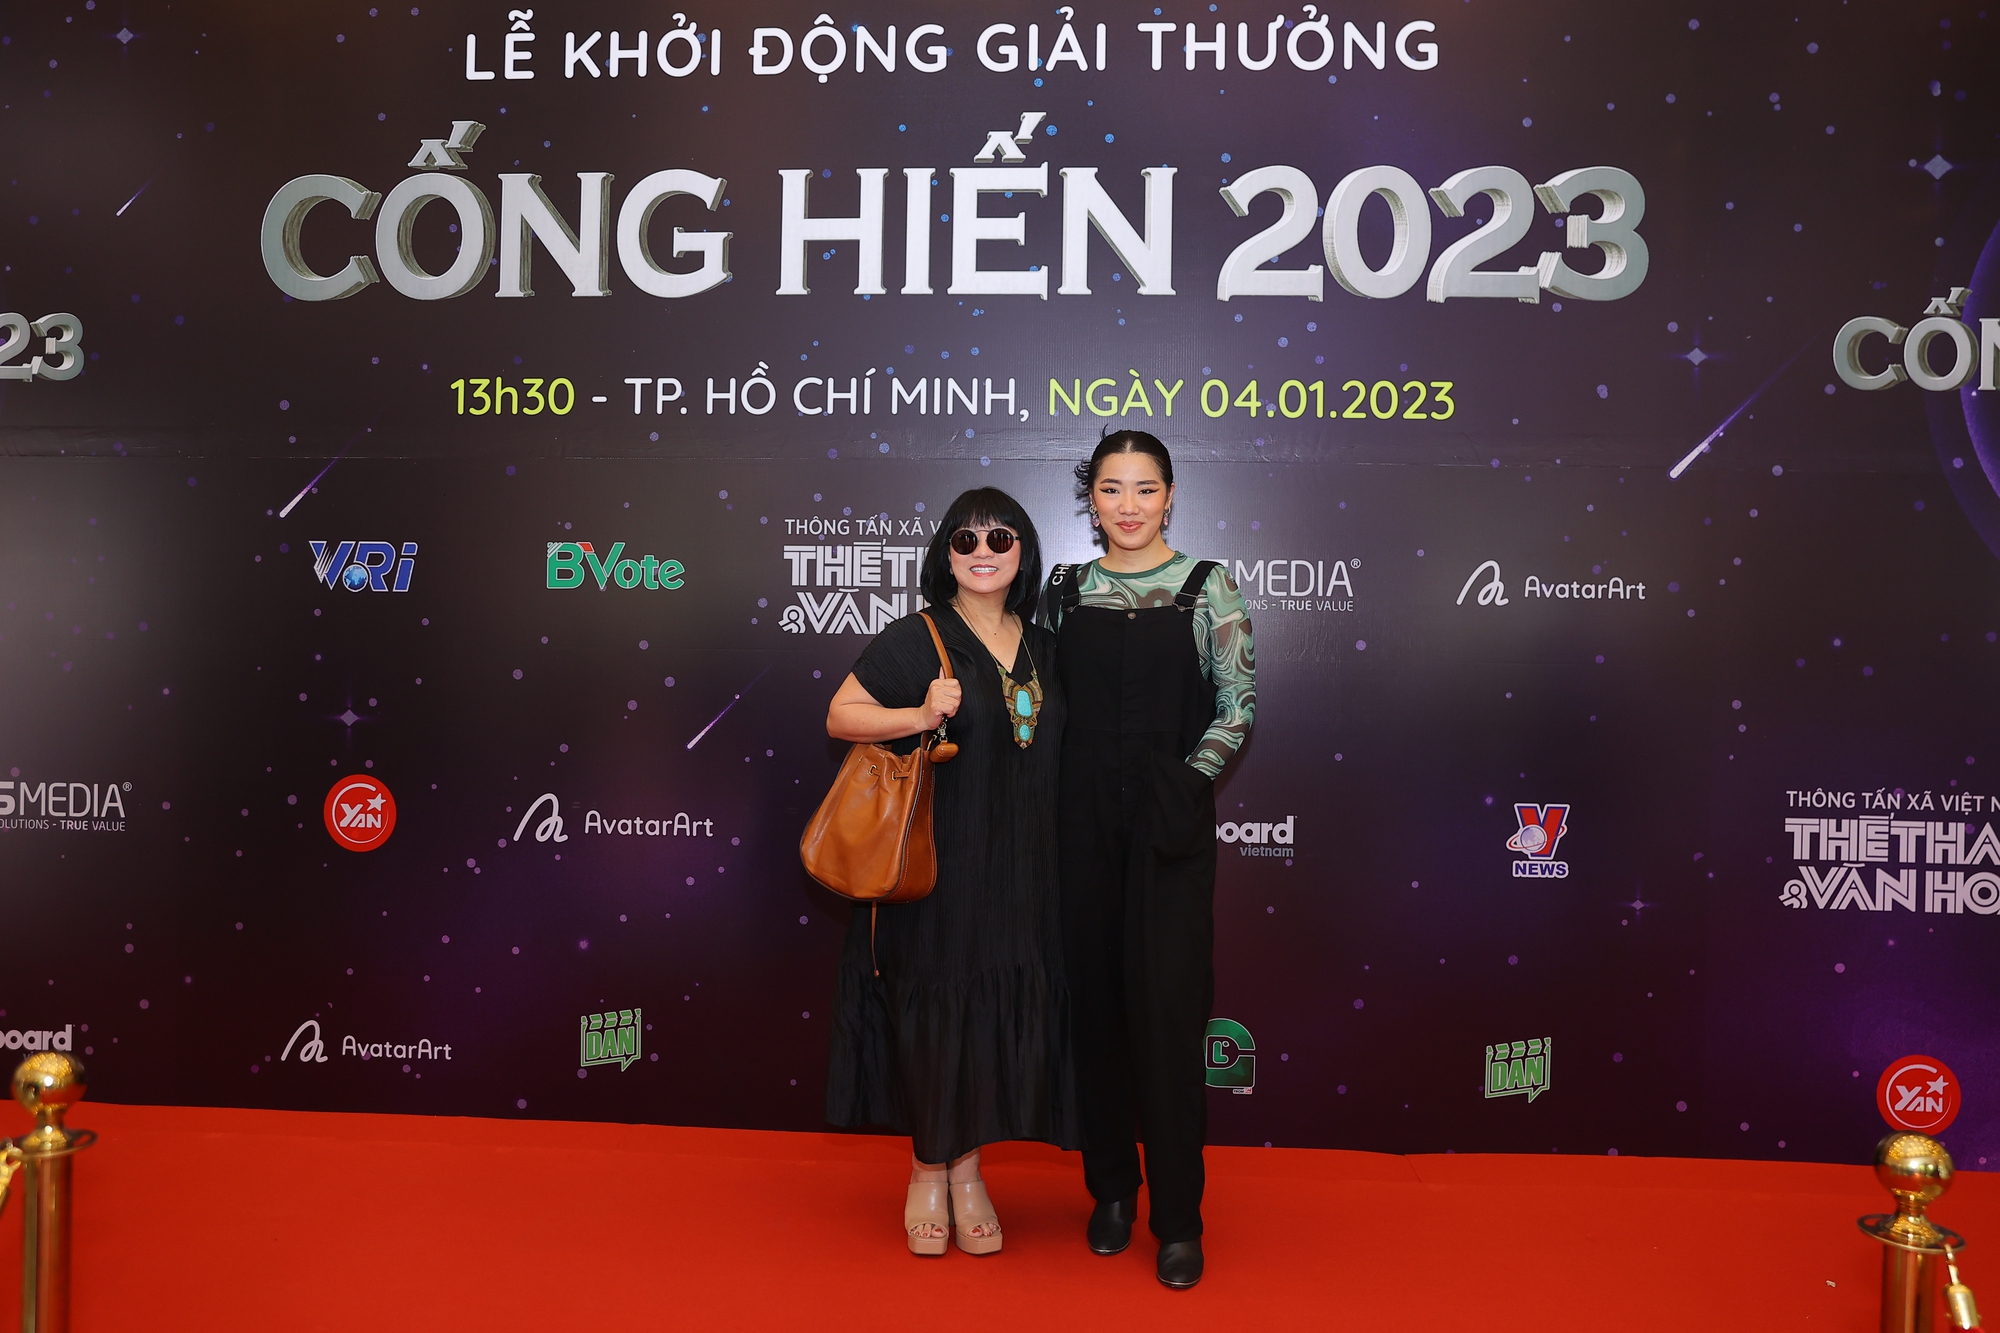 Hoa hậu Mai Phương, Công Vinh, Cẩm Vân đổ bộ thảm đỏ giải Cống hiến 2023 - Ảnh 4.